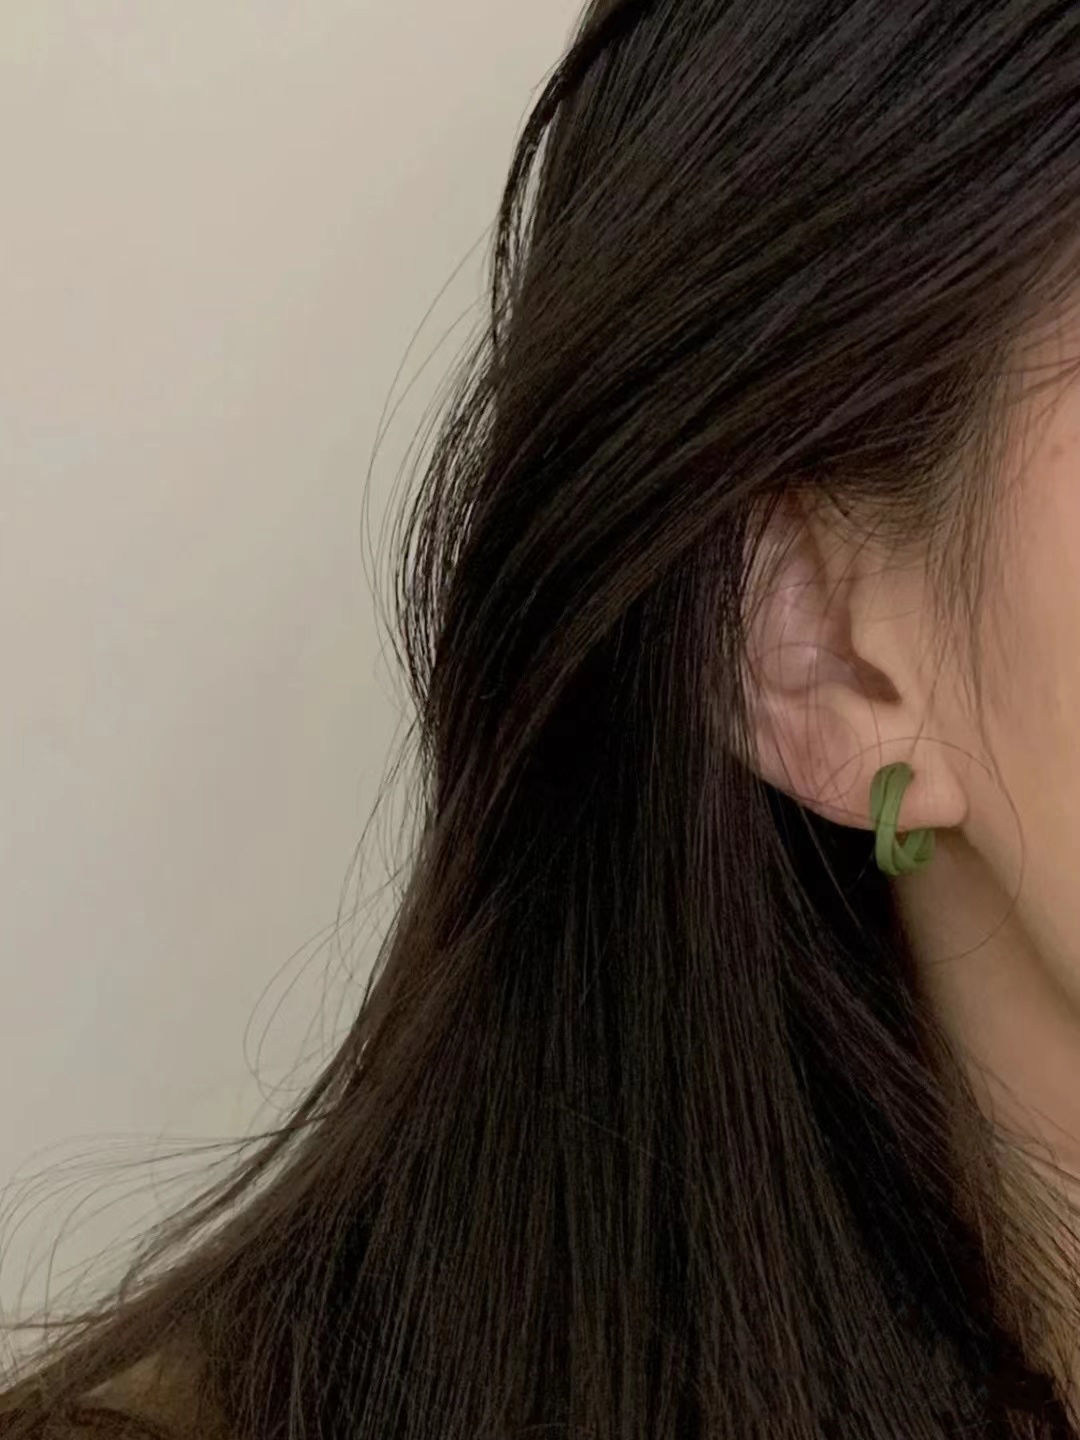 简约小巧绿色c形耳钉女百搭韩国气质耳圈耳环森系高级大气耳饰潮